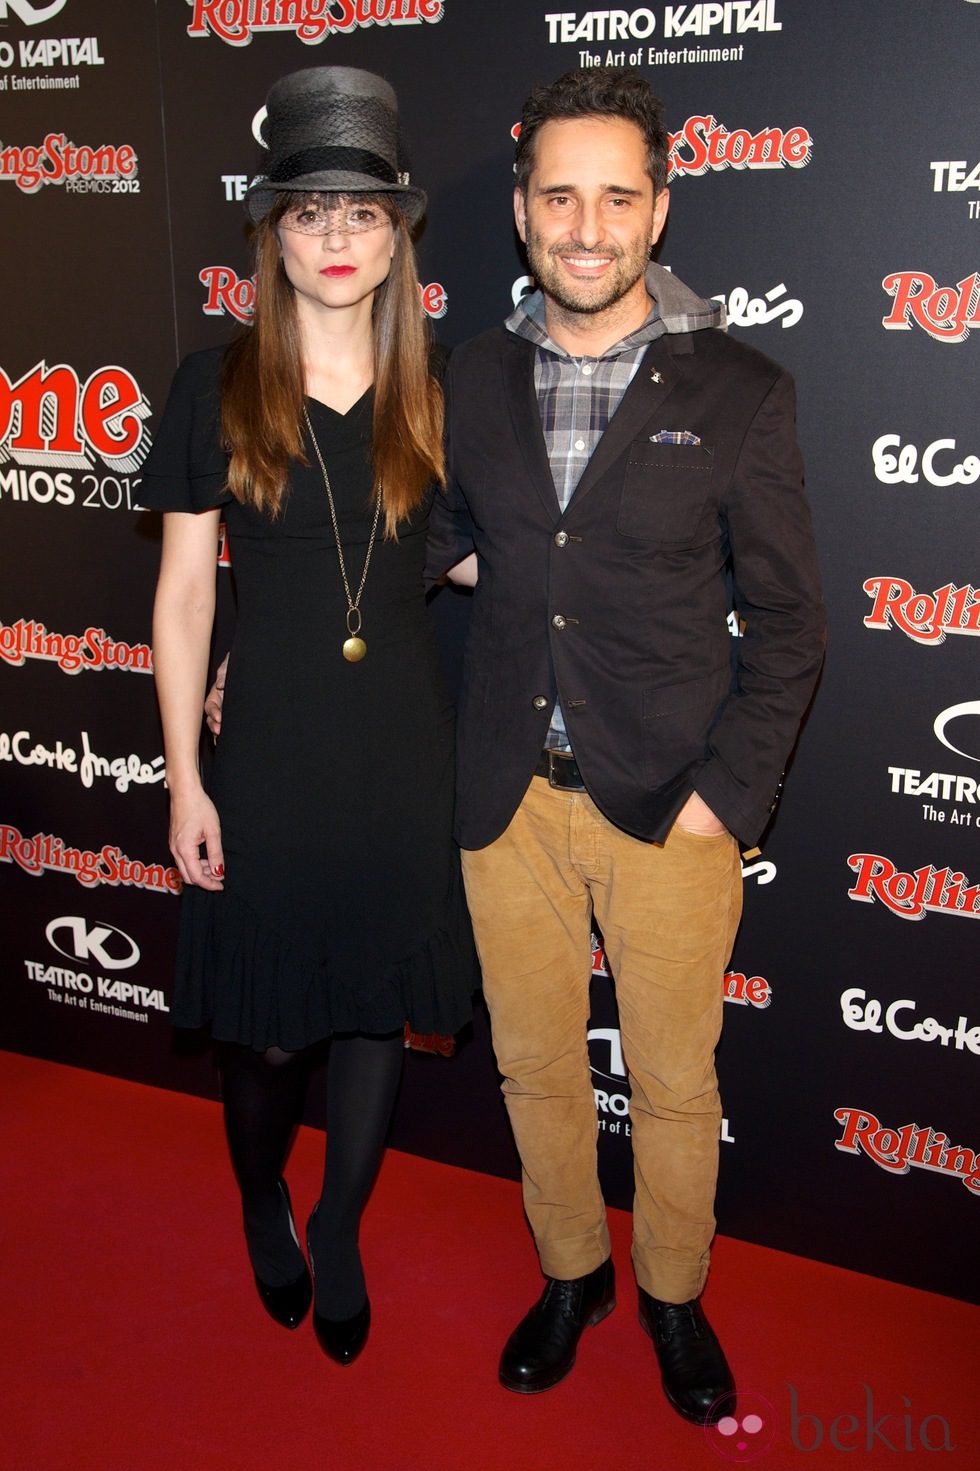 Leonor Watling y Jorge Drexler en los Premios Rolling Stone 2012